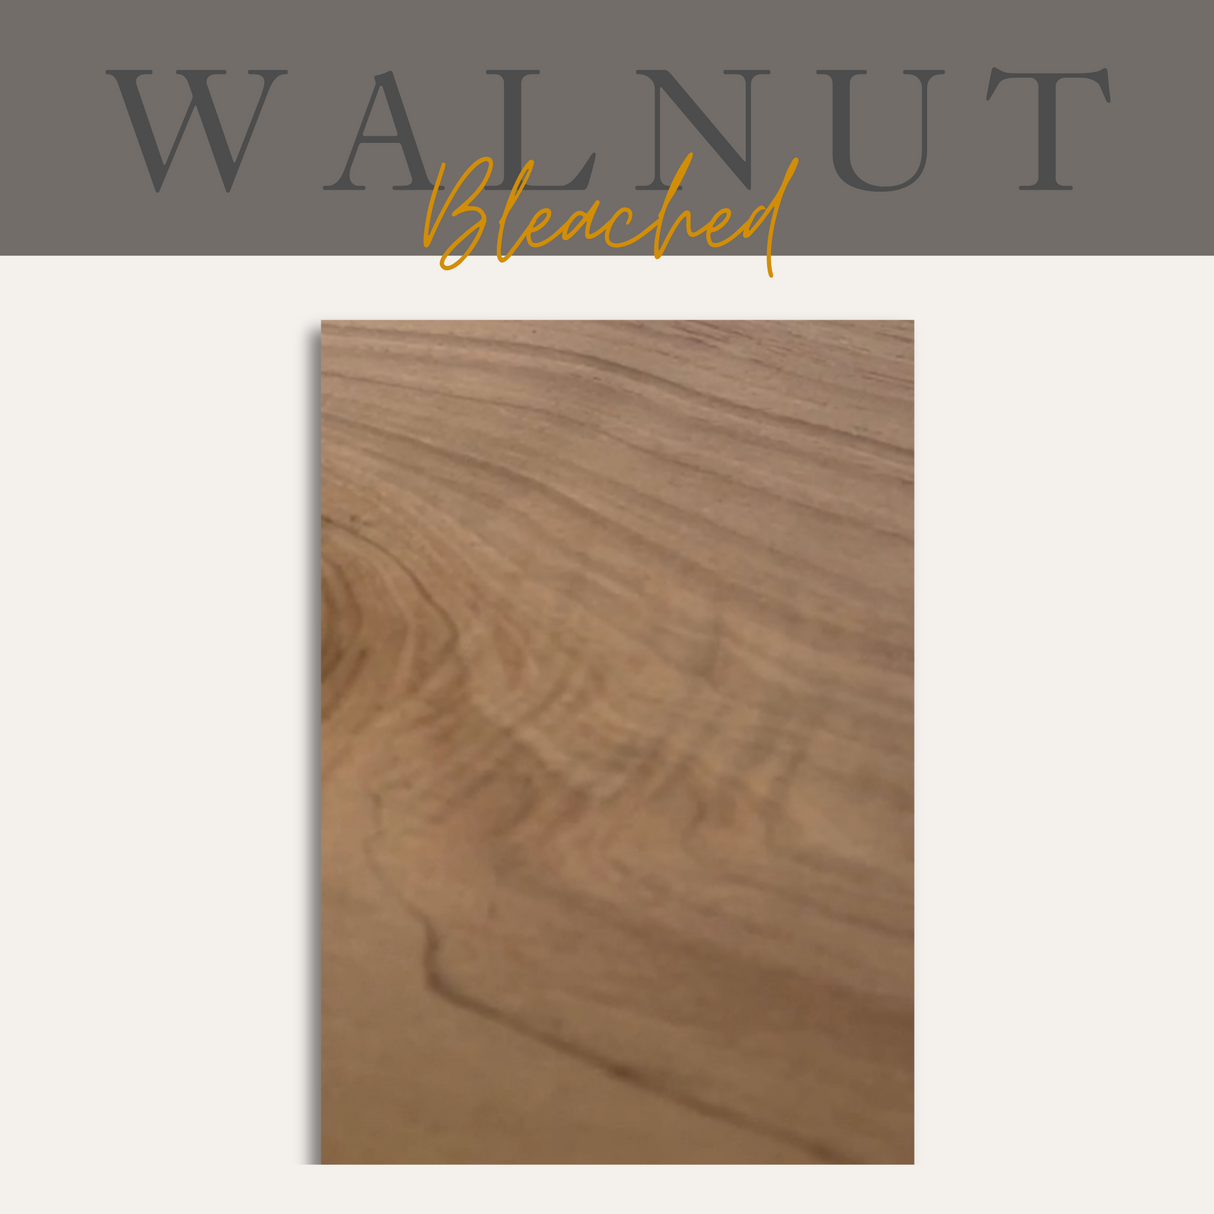 Walnut Floating Shelf - Master Product - Ultra Shelf